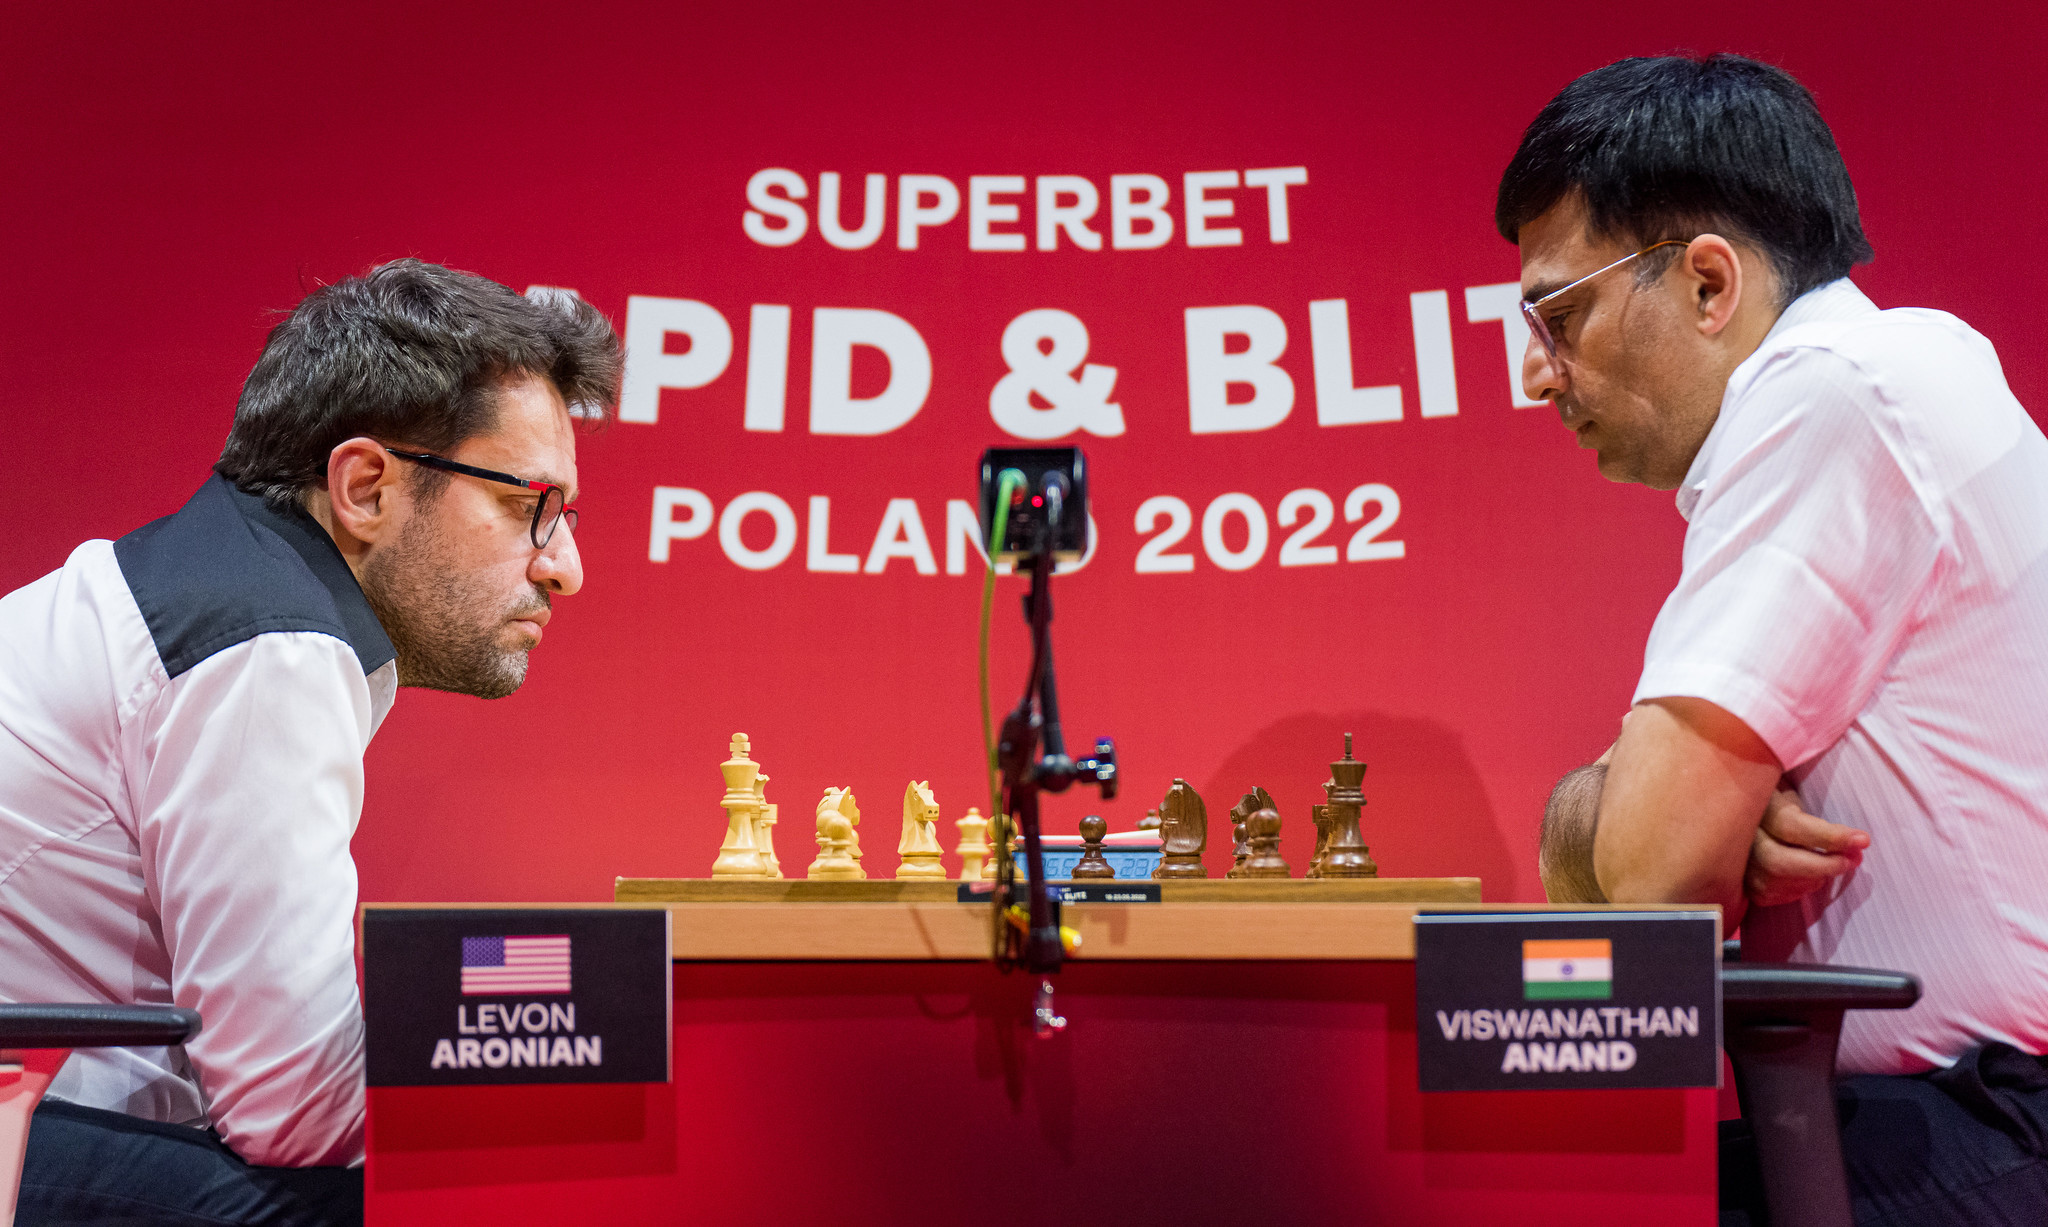 Levon Aronian w pojedynku z Vishim Anandem